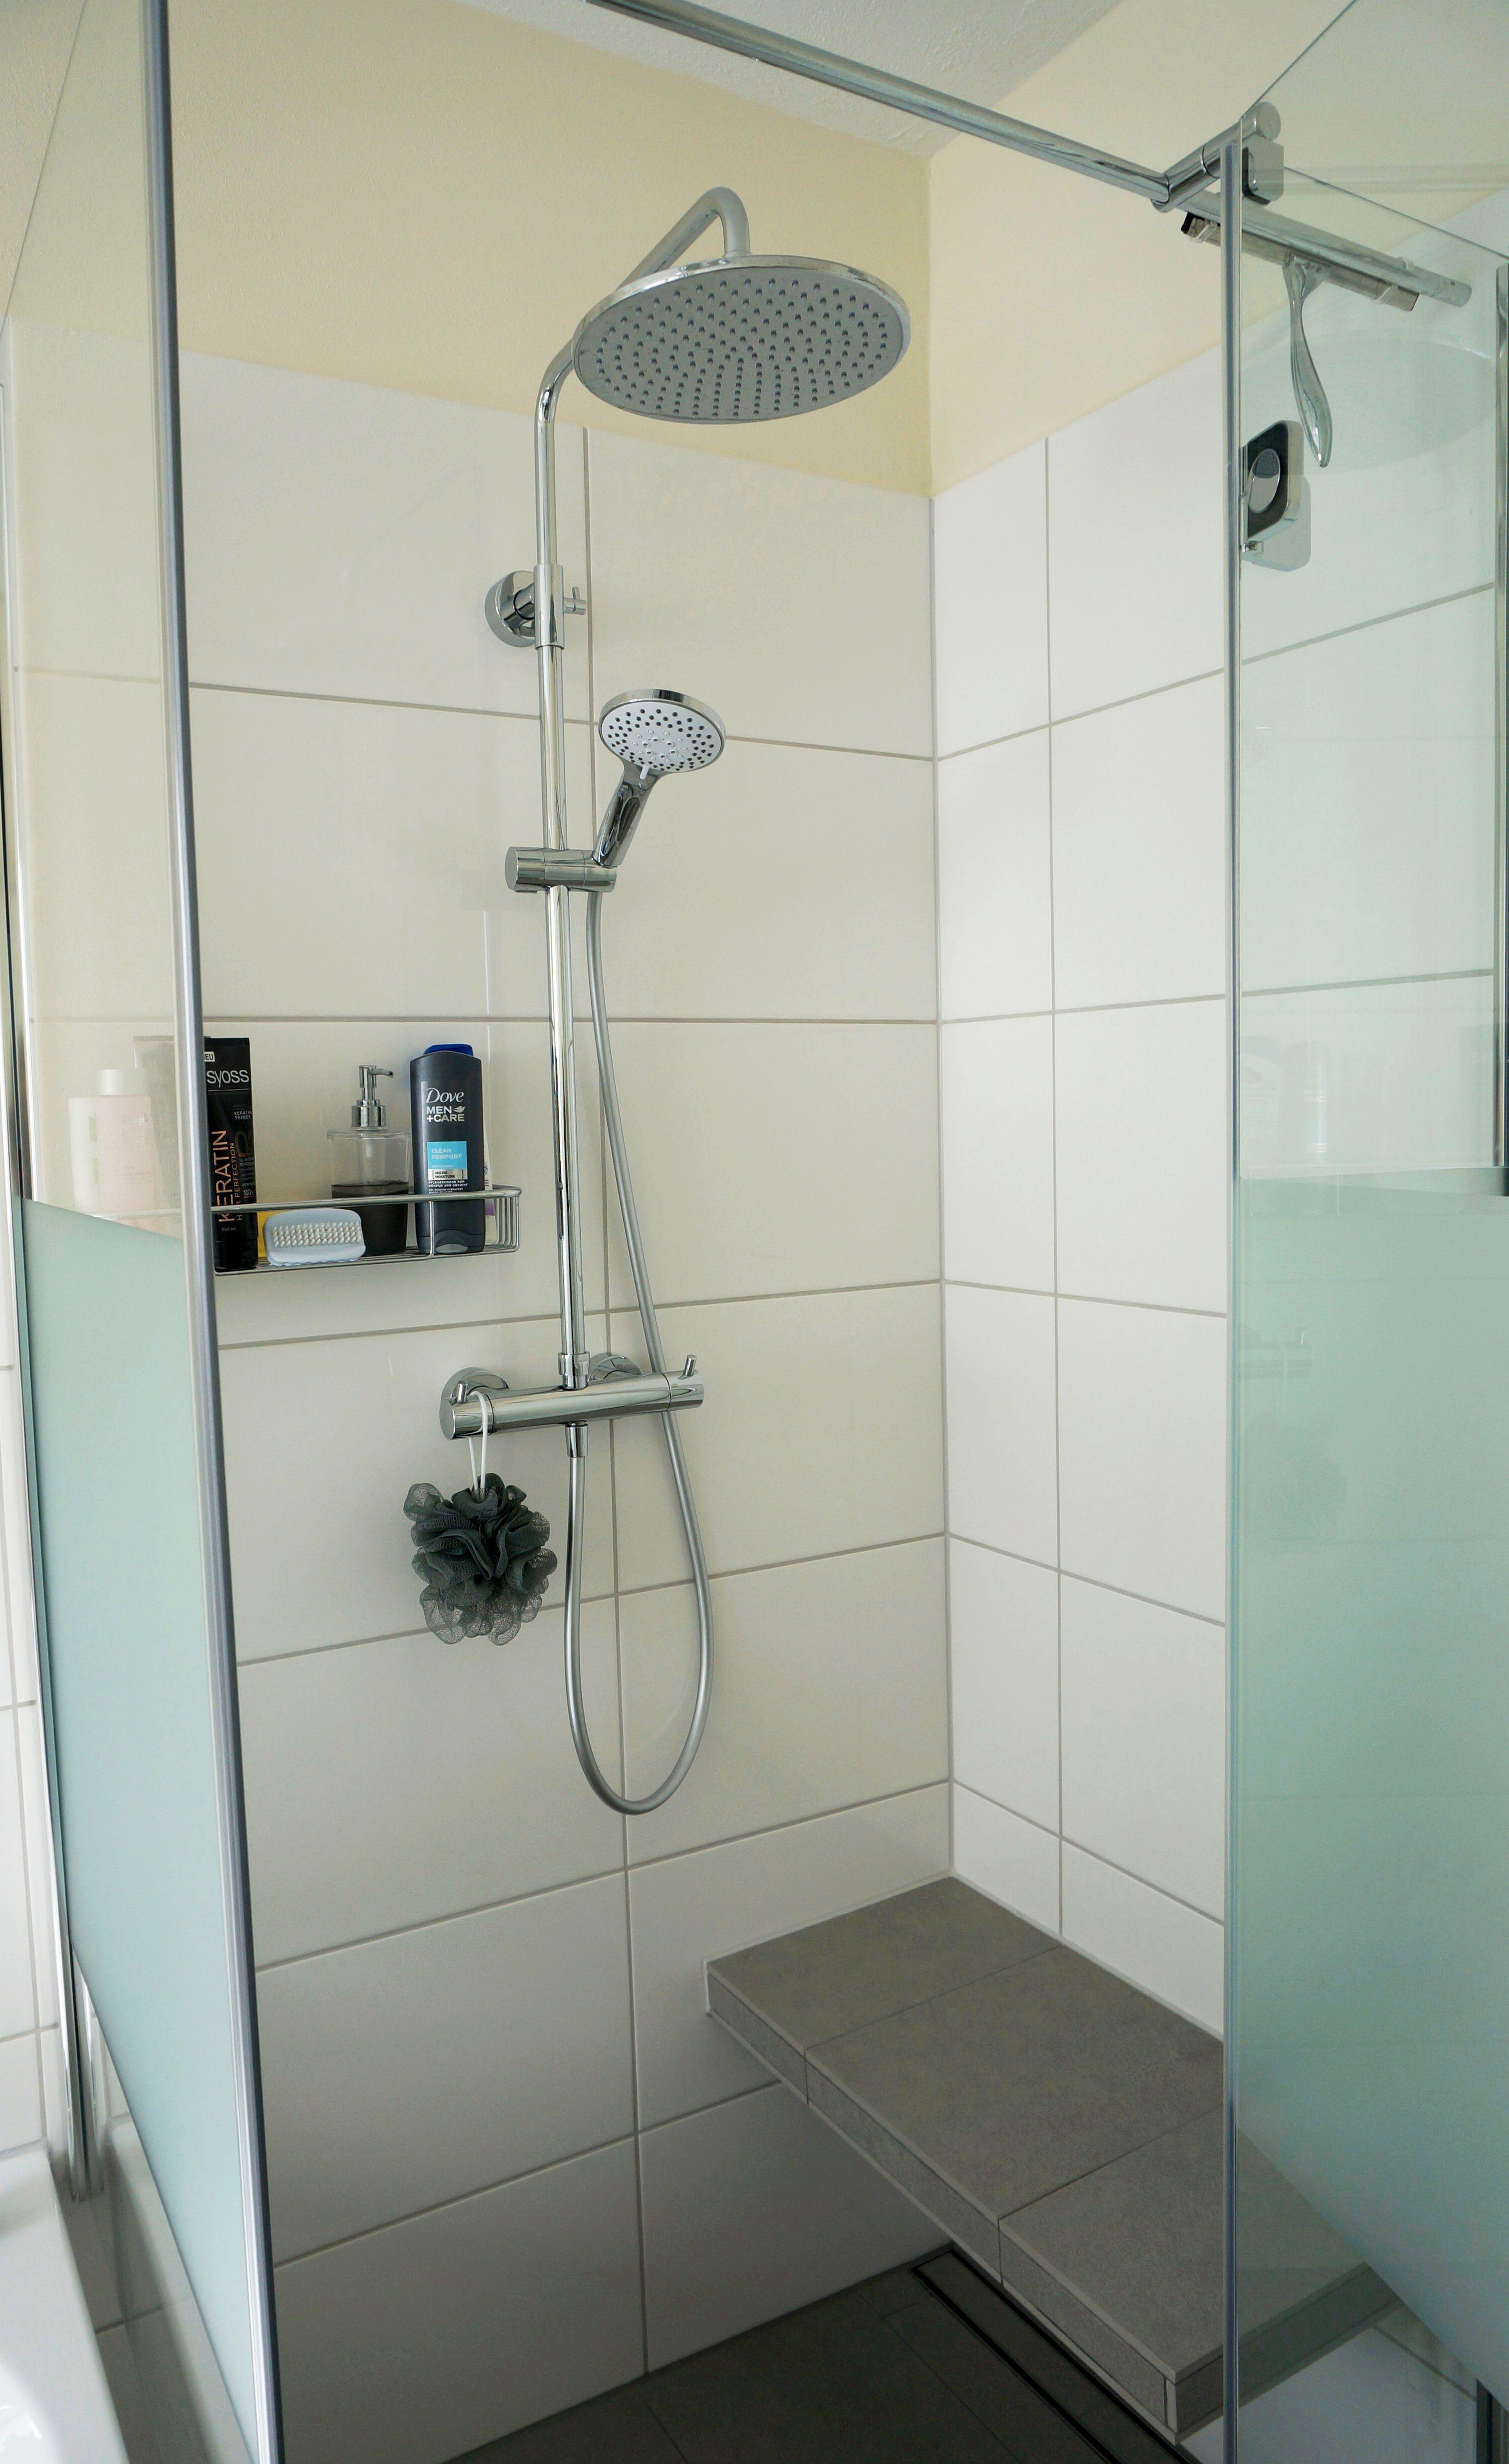 Bodengleiche Dusche mit Sitzbank #dusche #sitzbank ©HEIMWOHL GmbH